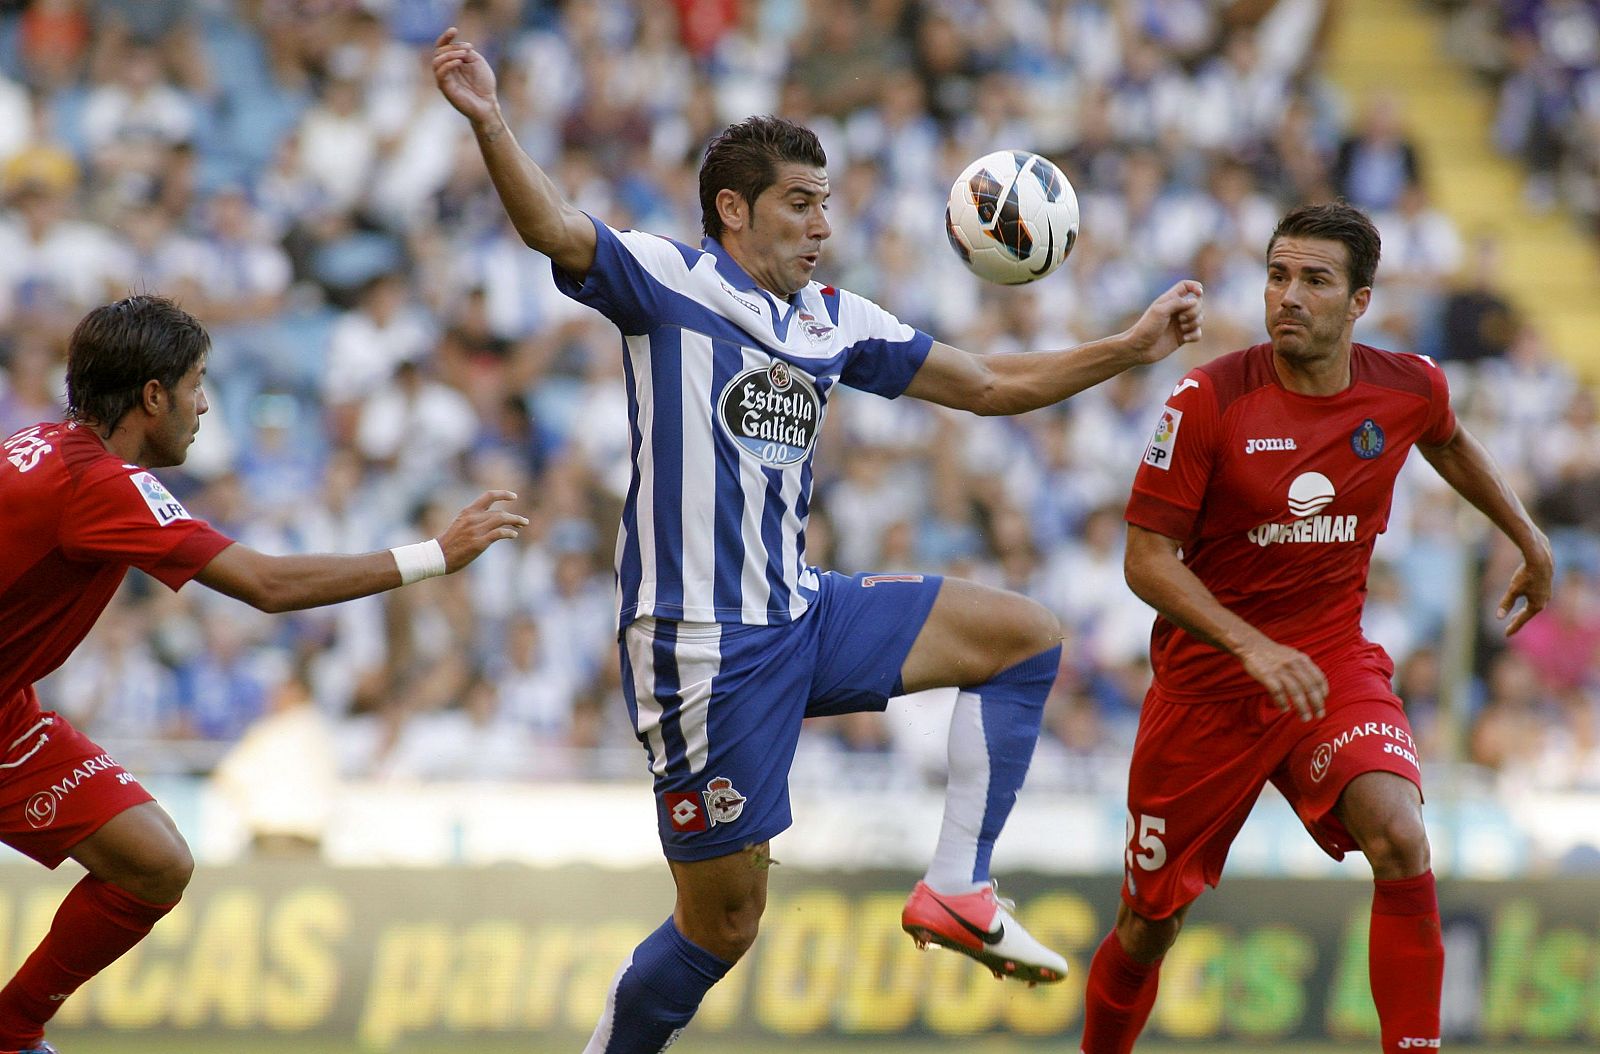 El delantero del Deportivo Iván Sánchez-Rico "Riki" (c), lucha la pelota con el centrocampista del Getafe CF, Xavi Torres (d)